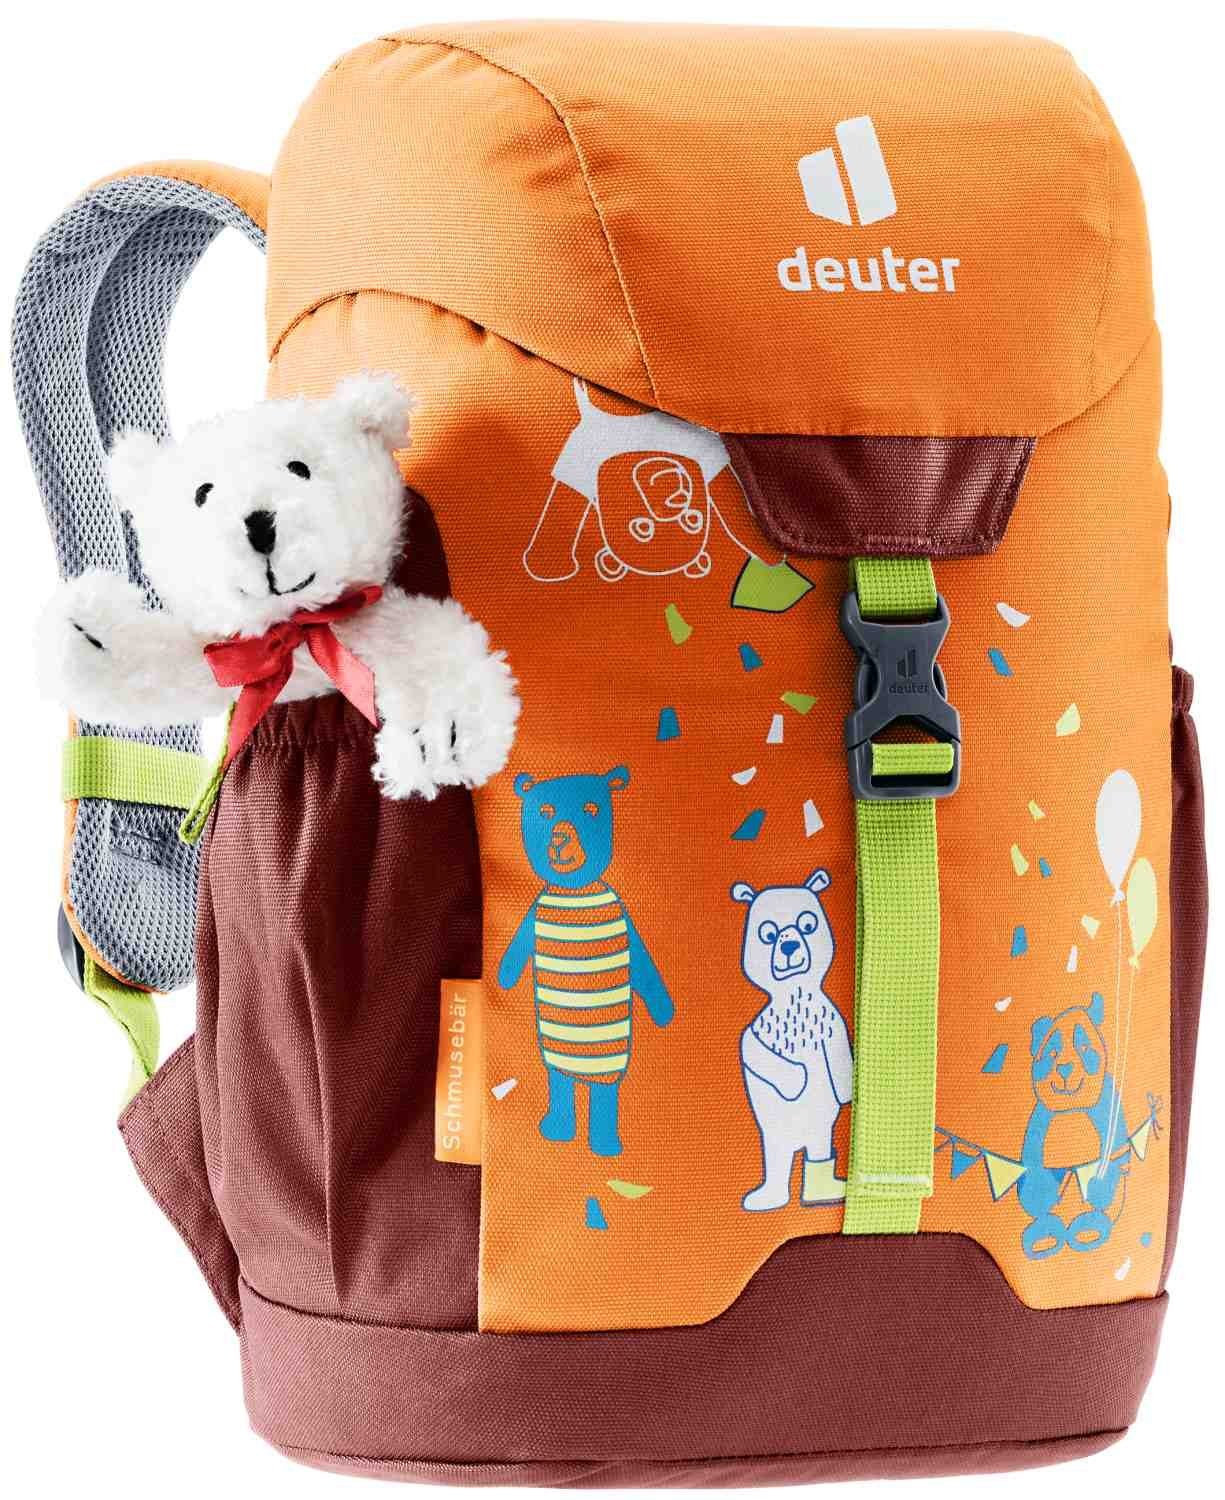 Teddybär Schmusebär Kinderrucksack deuter mandarine-redwood Babystiefel mit deuter